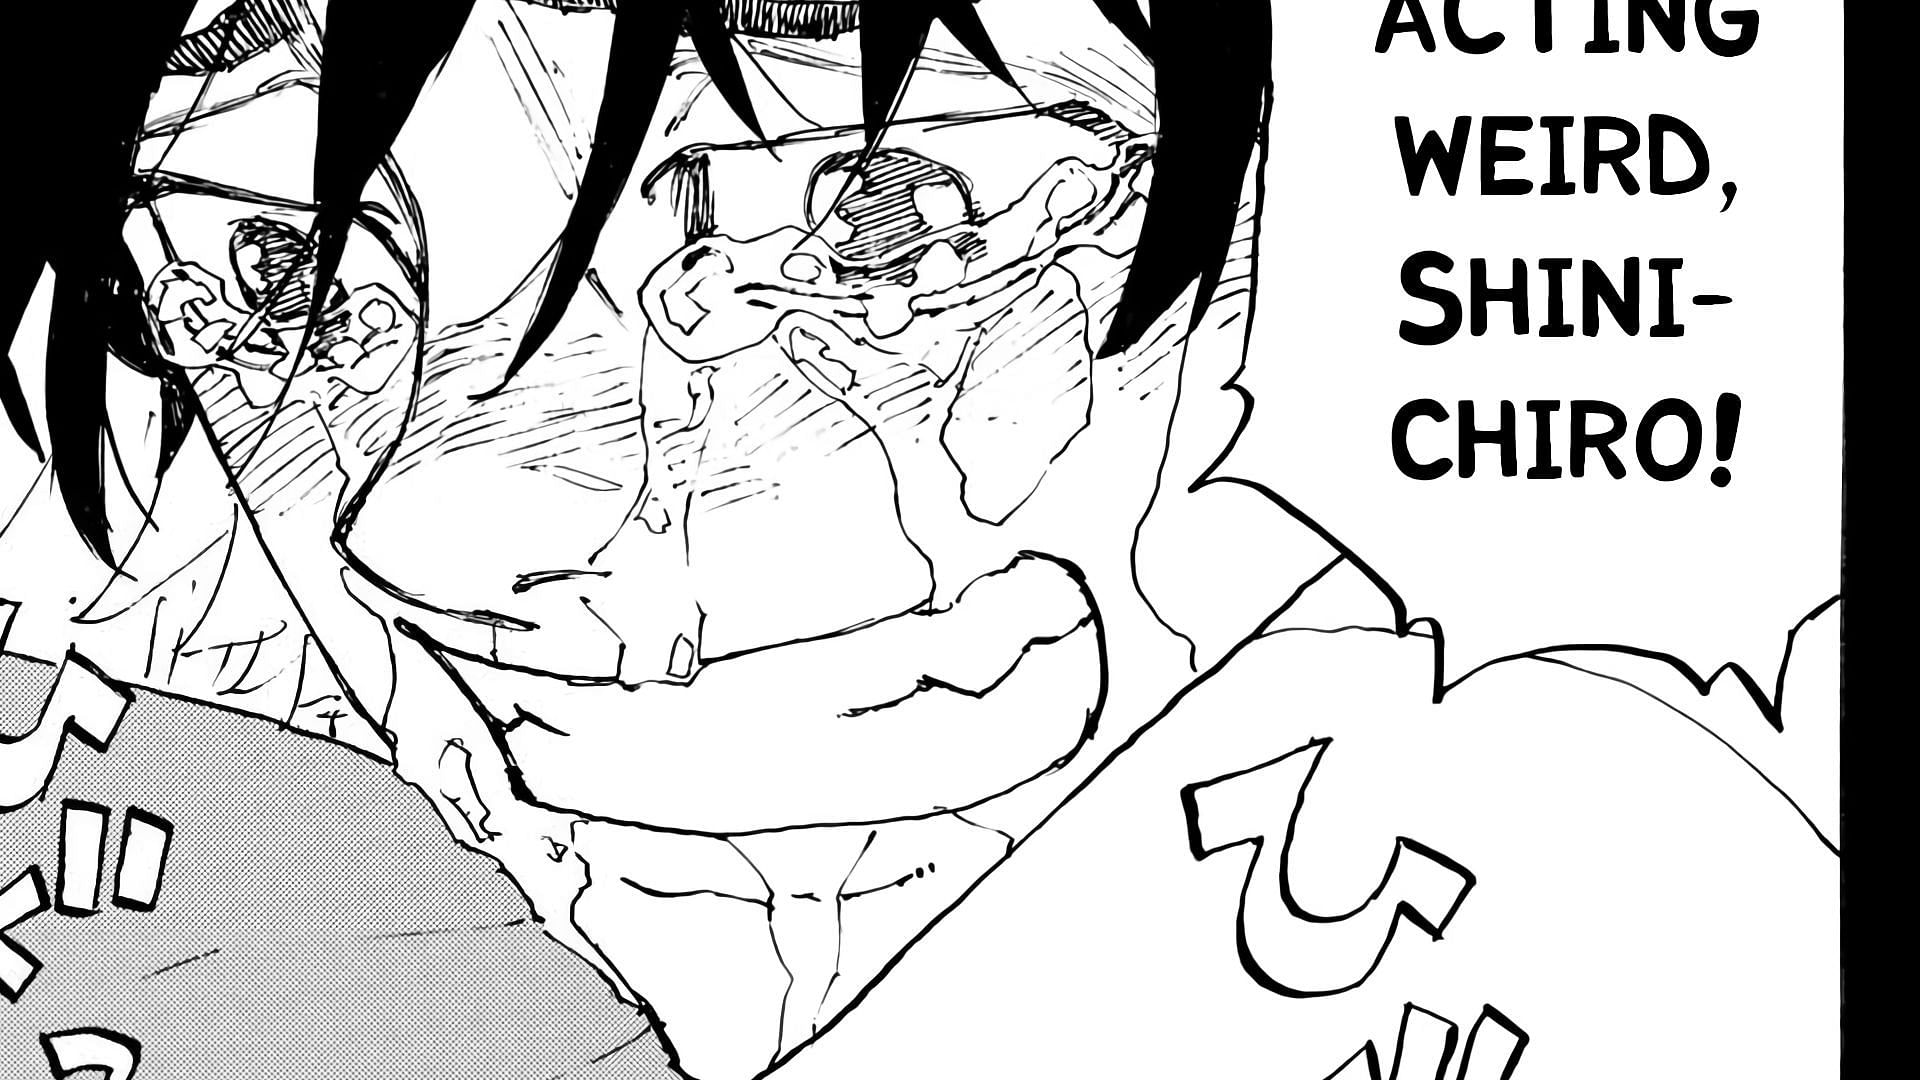 Shinichiro crying in Tokyo Revengers chapter 272 (Image via Ken Wakui, Kodansha)